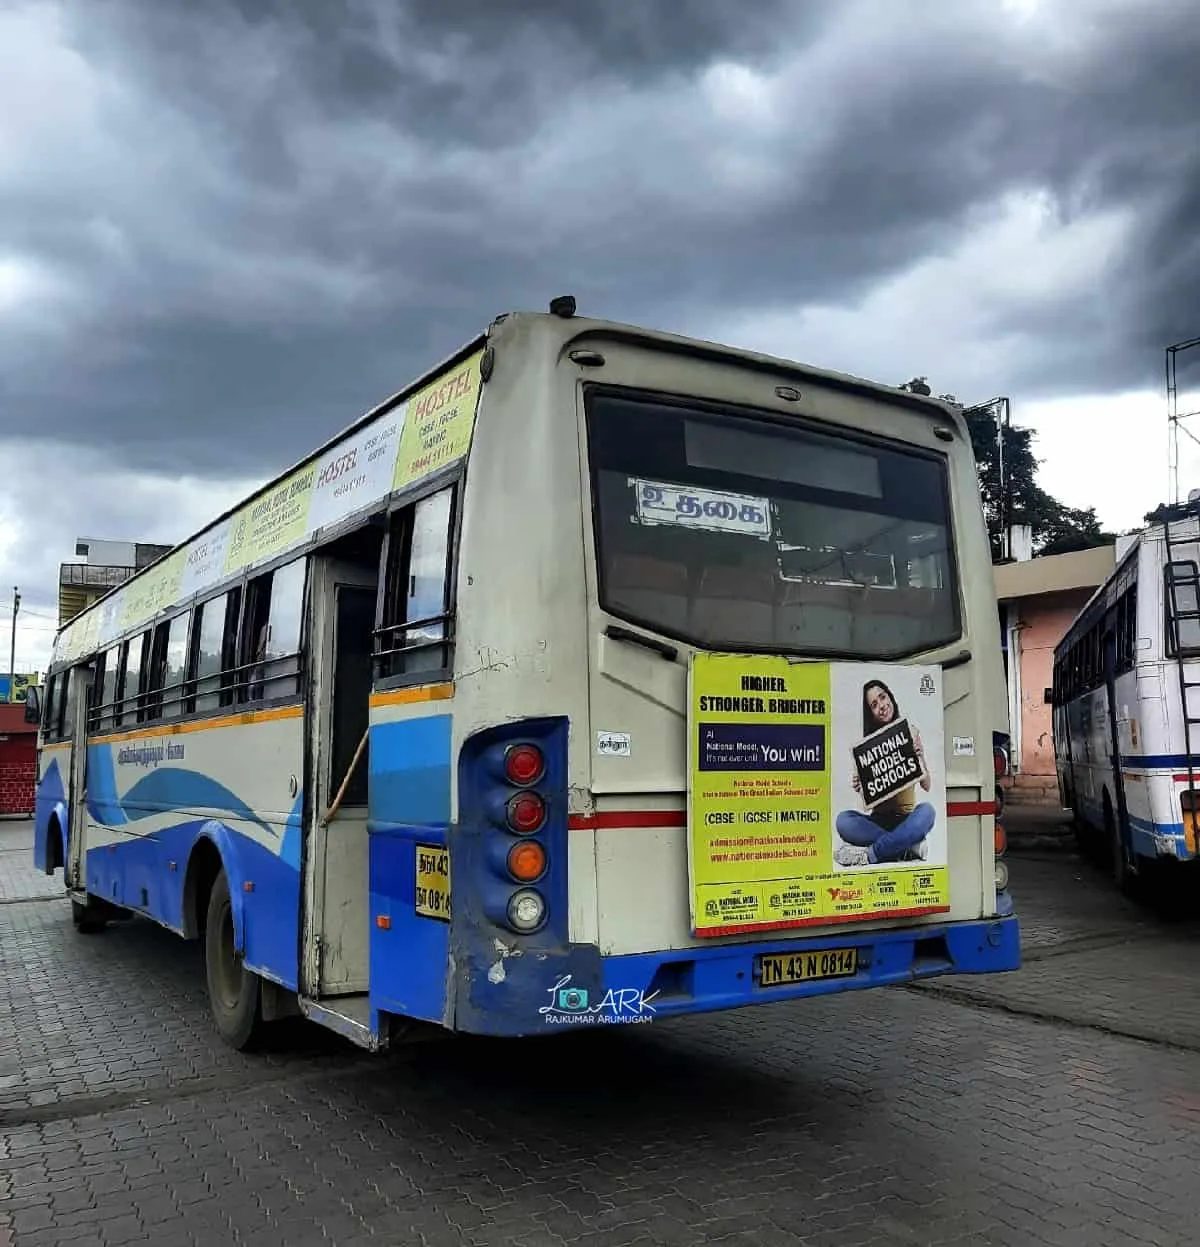 TNSTC TN 43 N 0814 Ooty - Tiruppur Bus Timings 